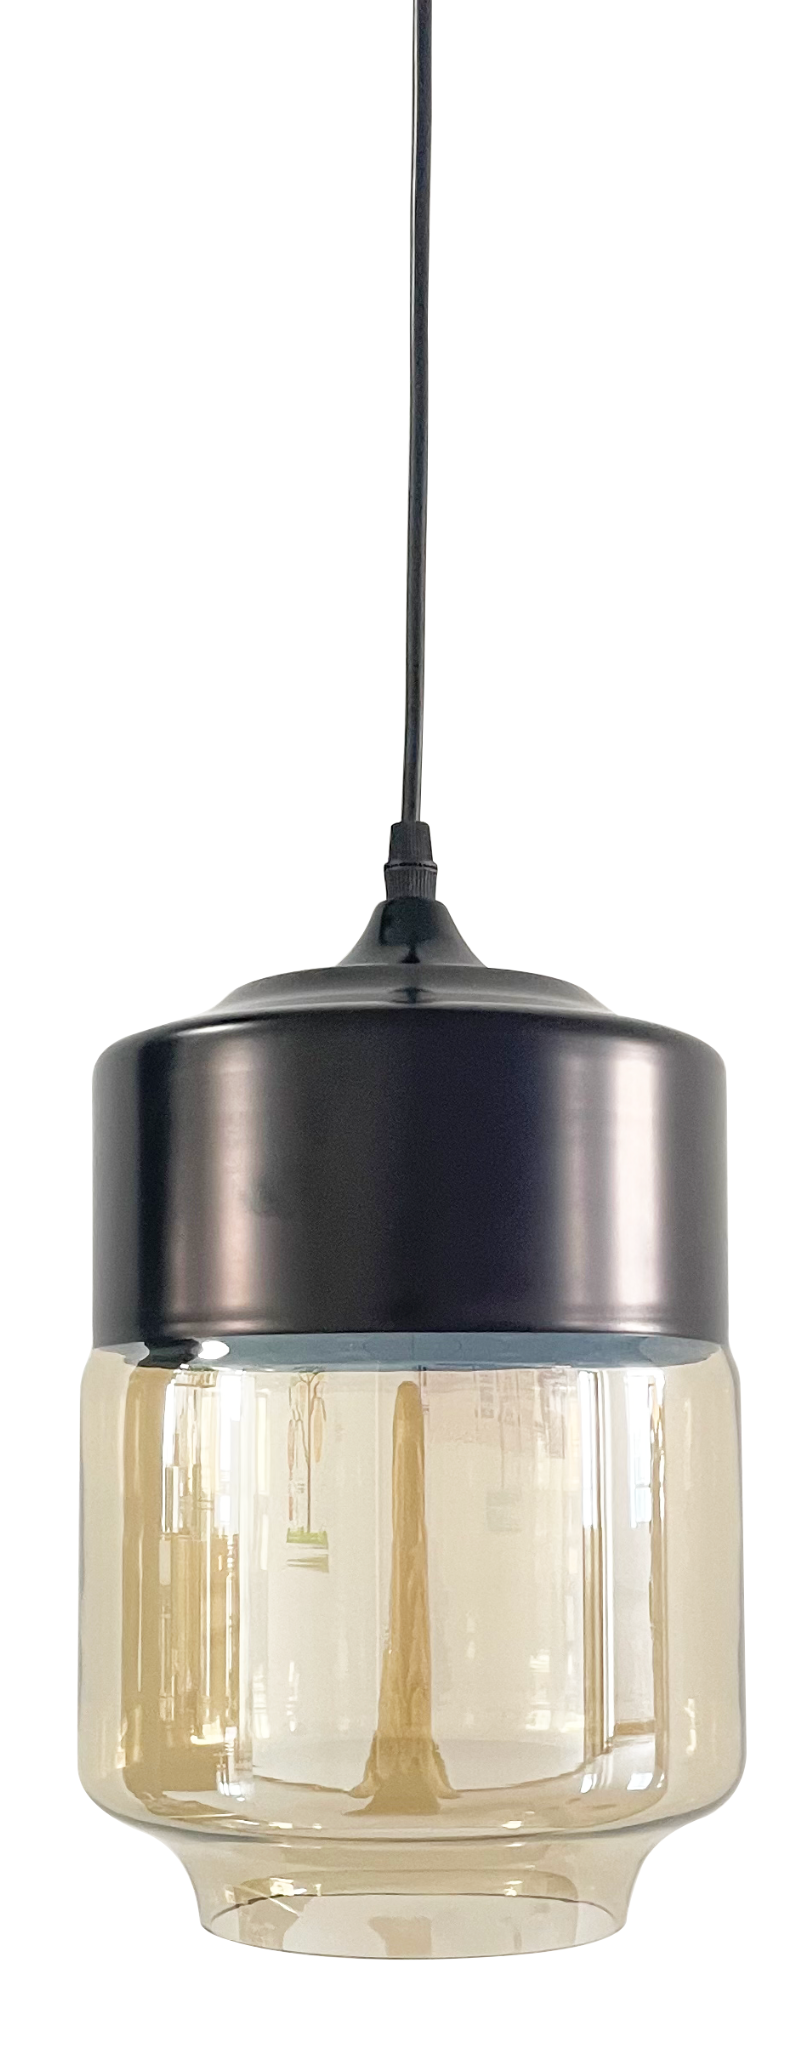 LED-Hängelampe in schwarz, rundlich, aus Glas, E27-Fassung, IP20, Ø18 cm